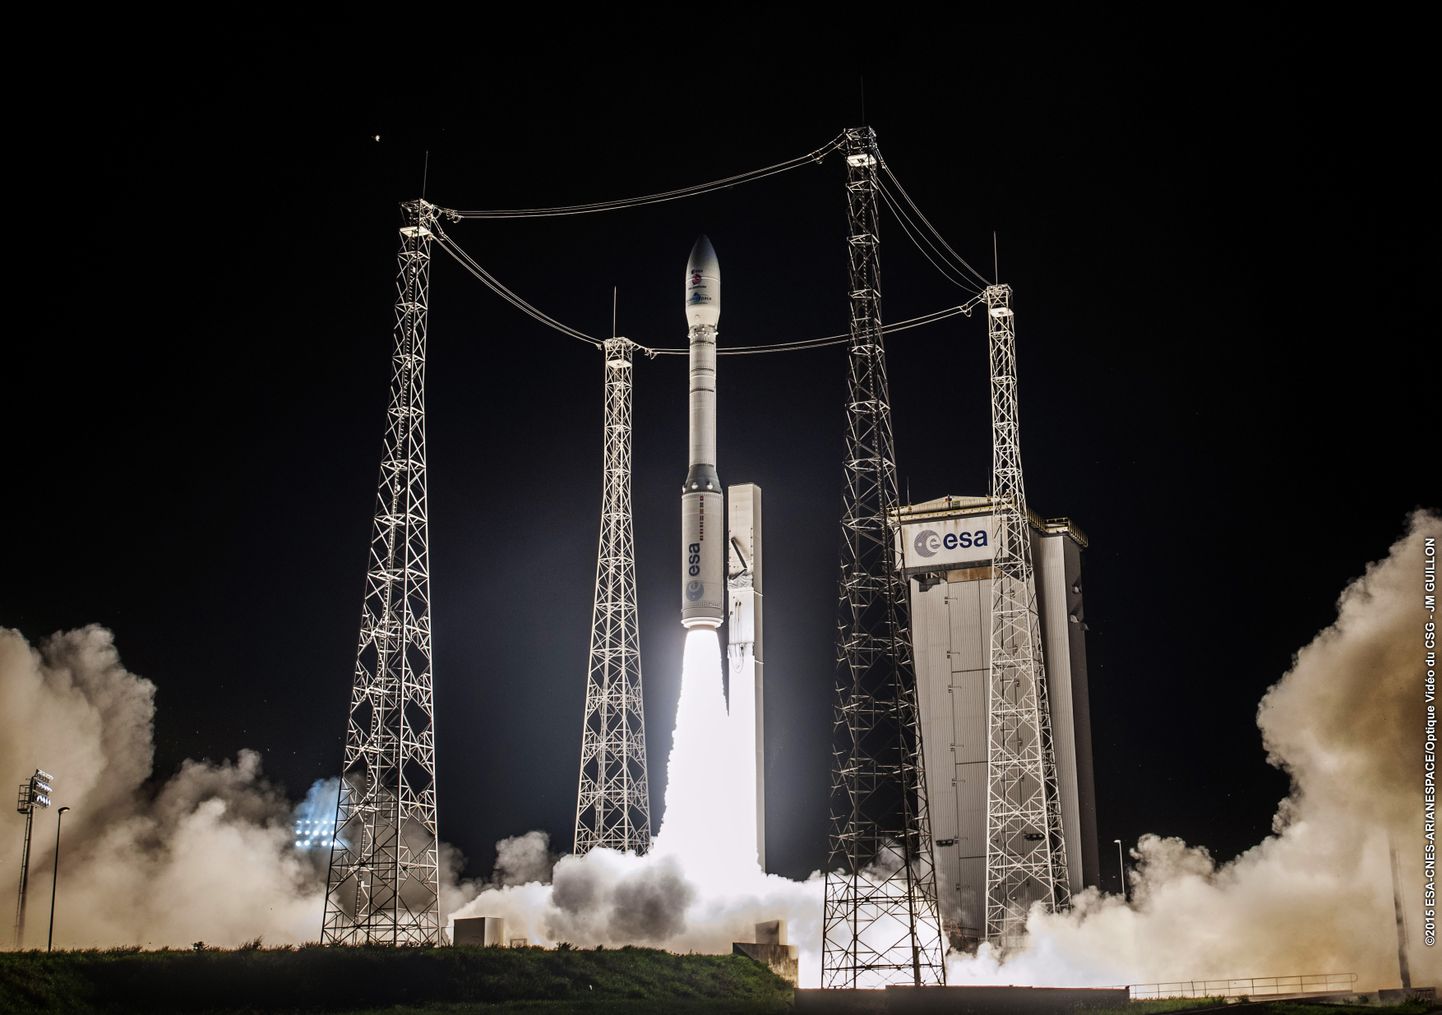 Euroopa Kosmoseagentuuri rakett Vega.